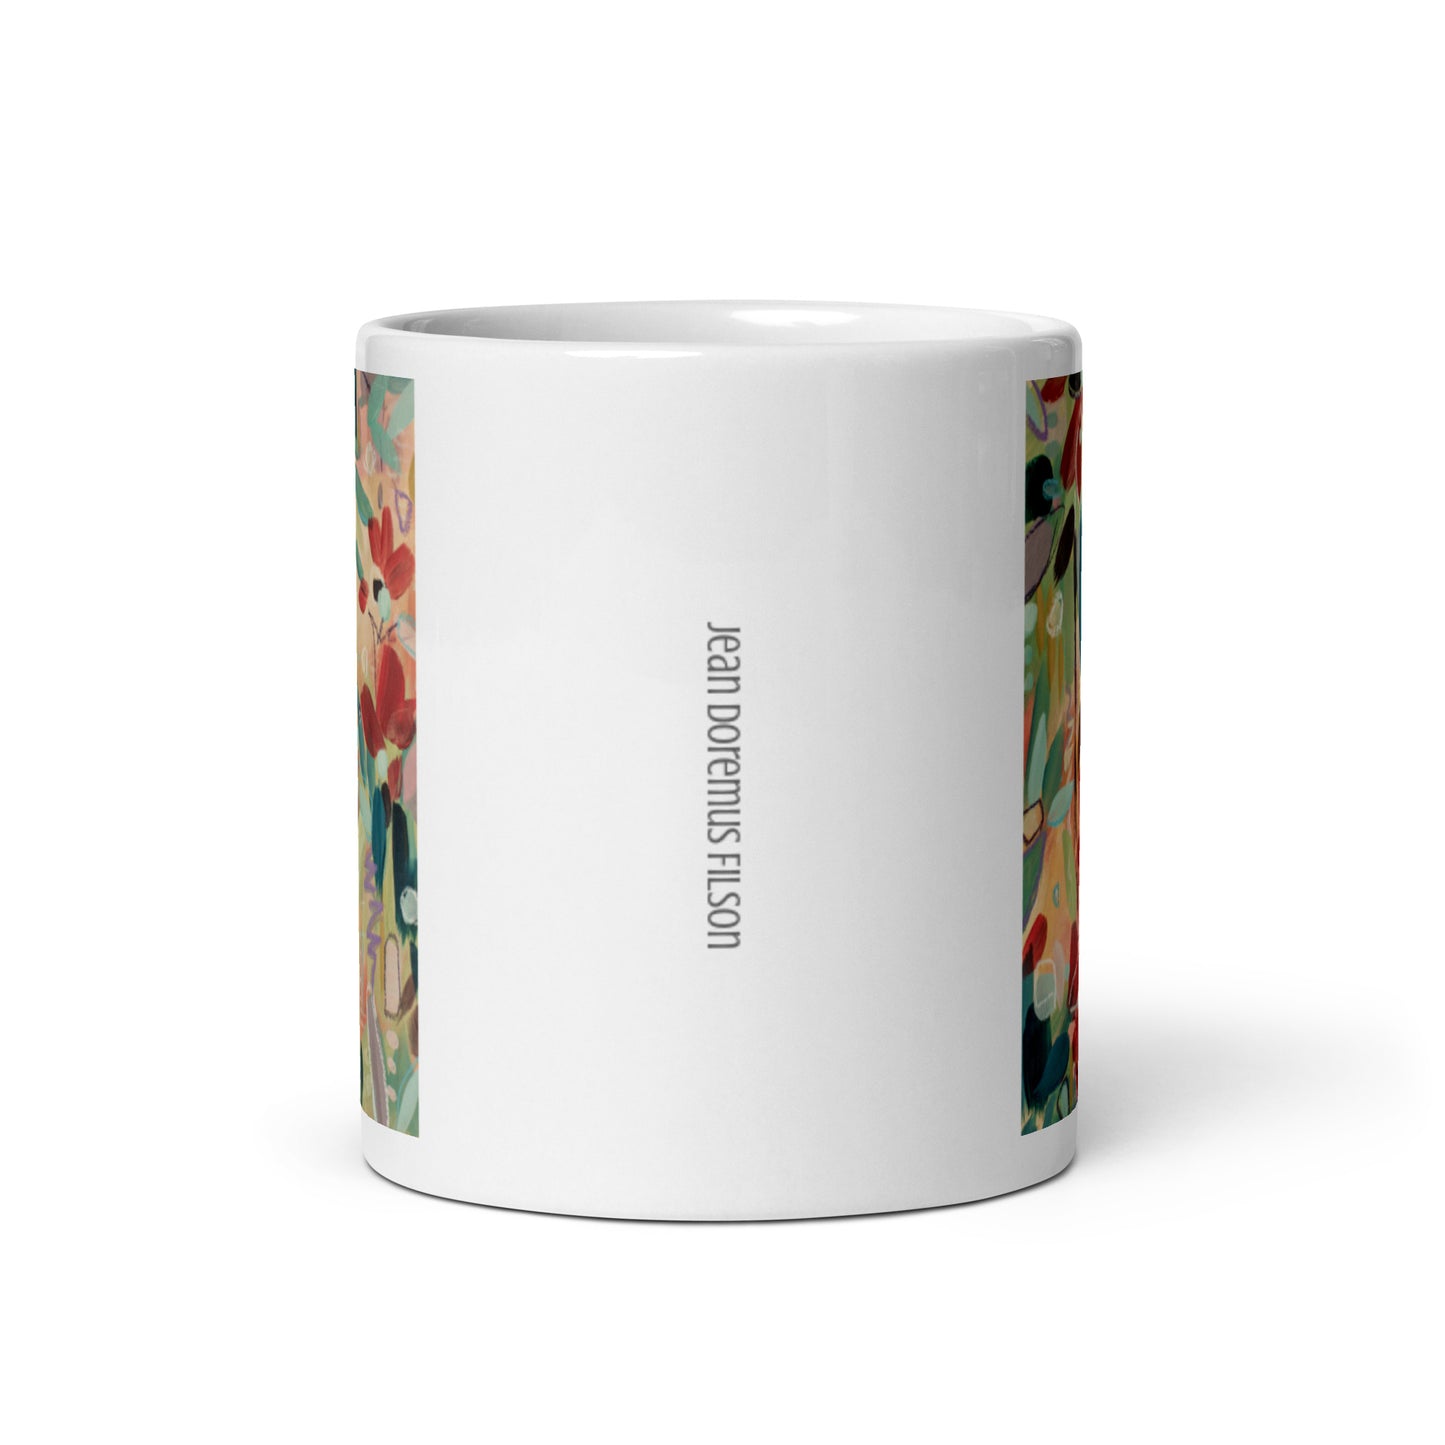 Asking for Flowers, White glossy mug